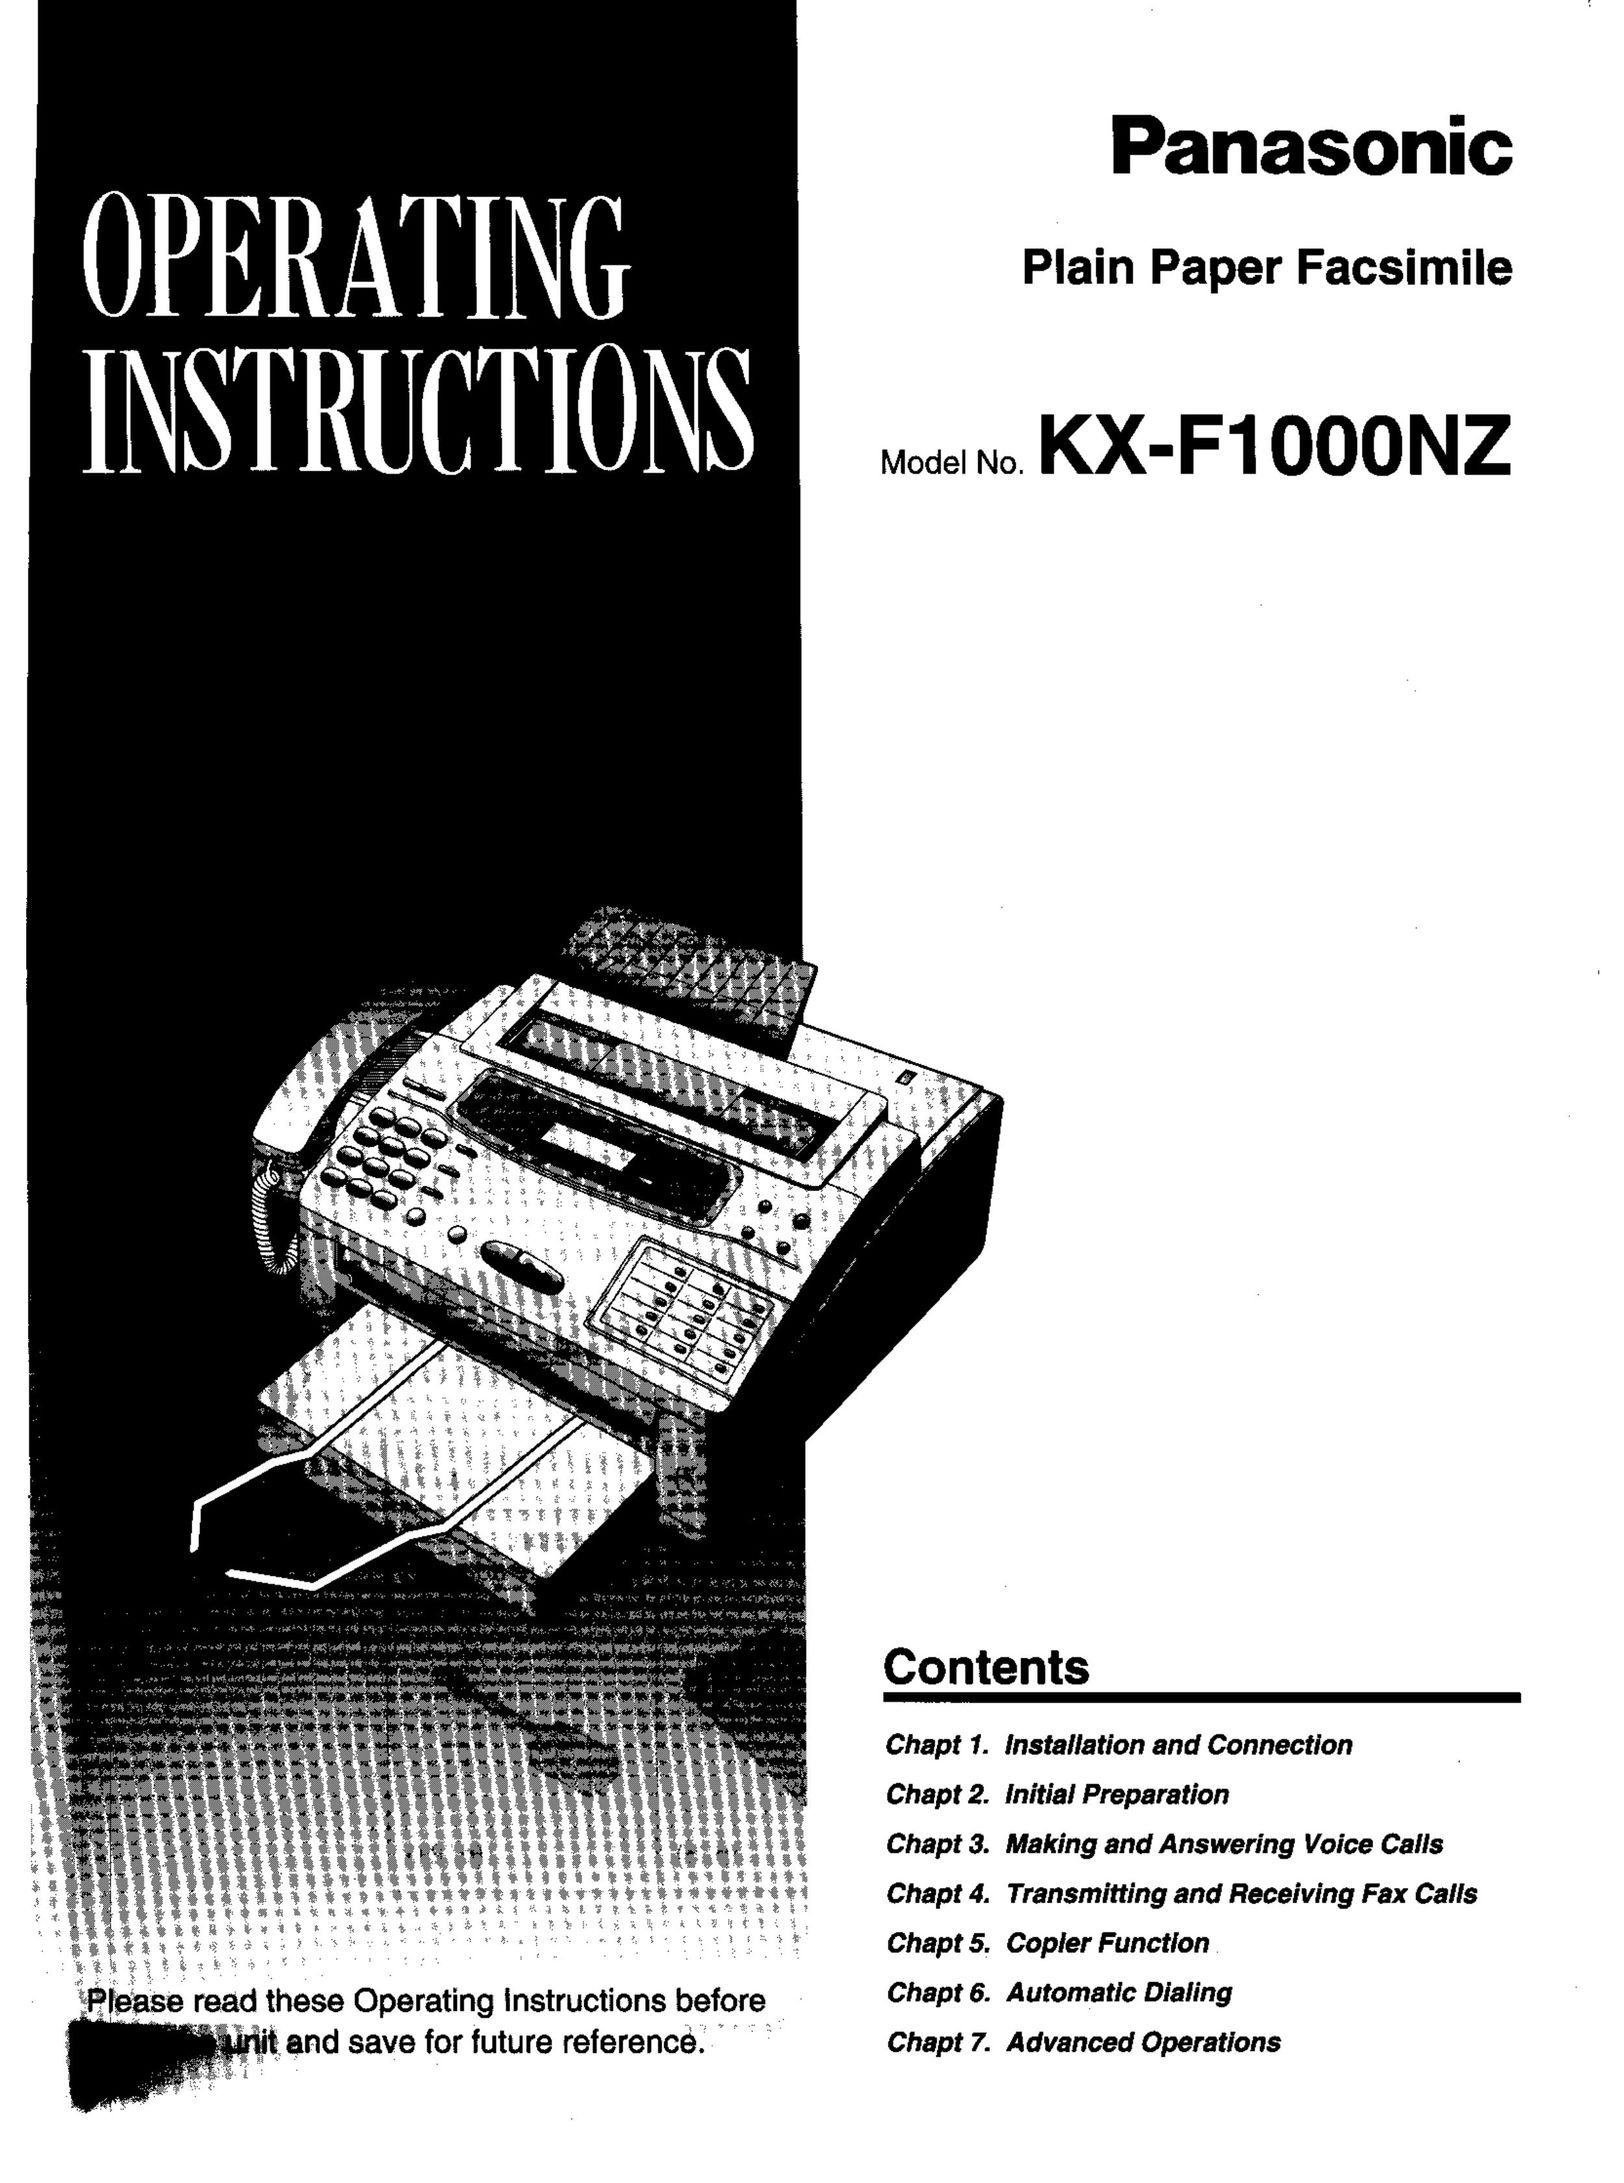 Panasonic KX-F1000NZ Fax Machine User Manual